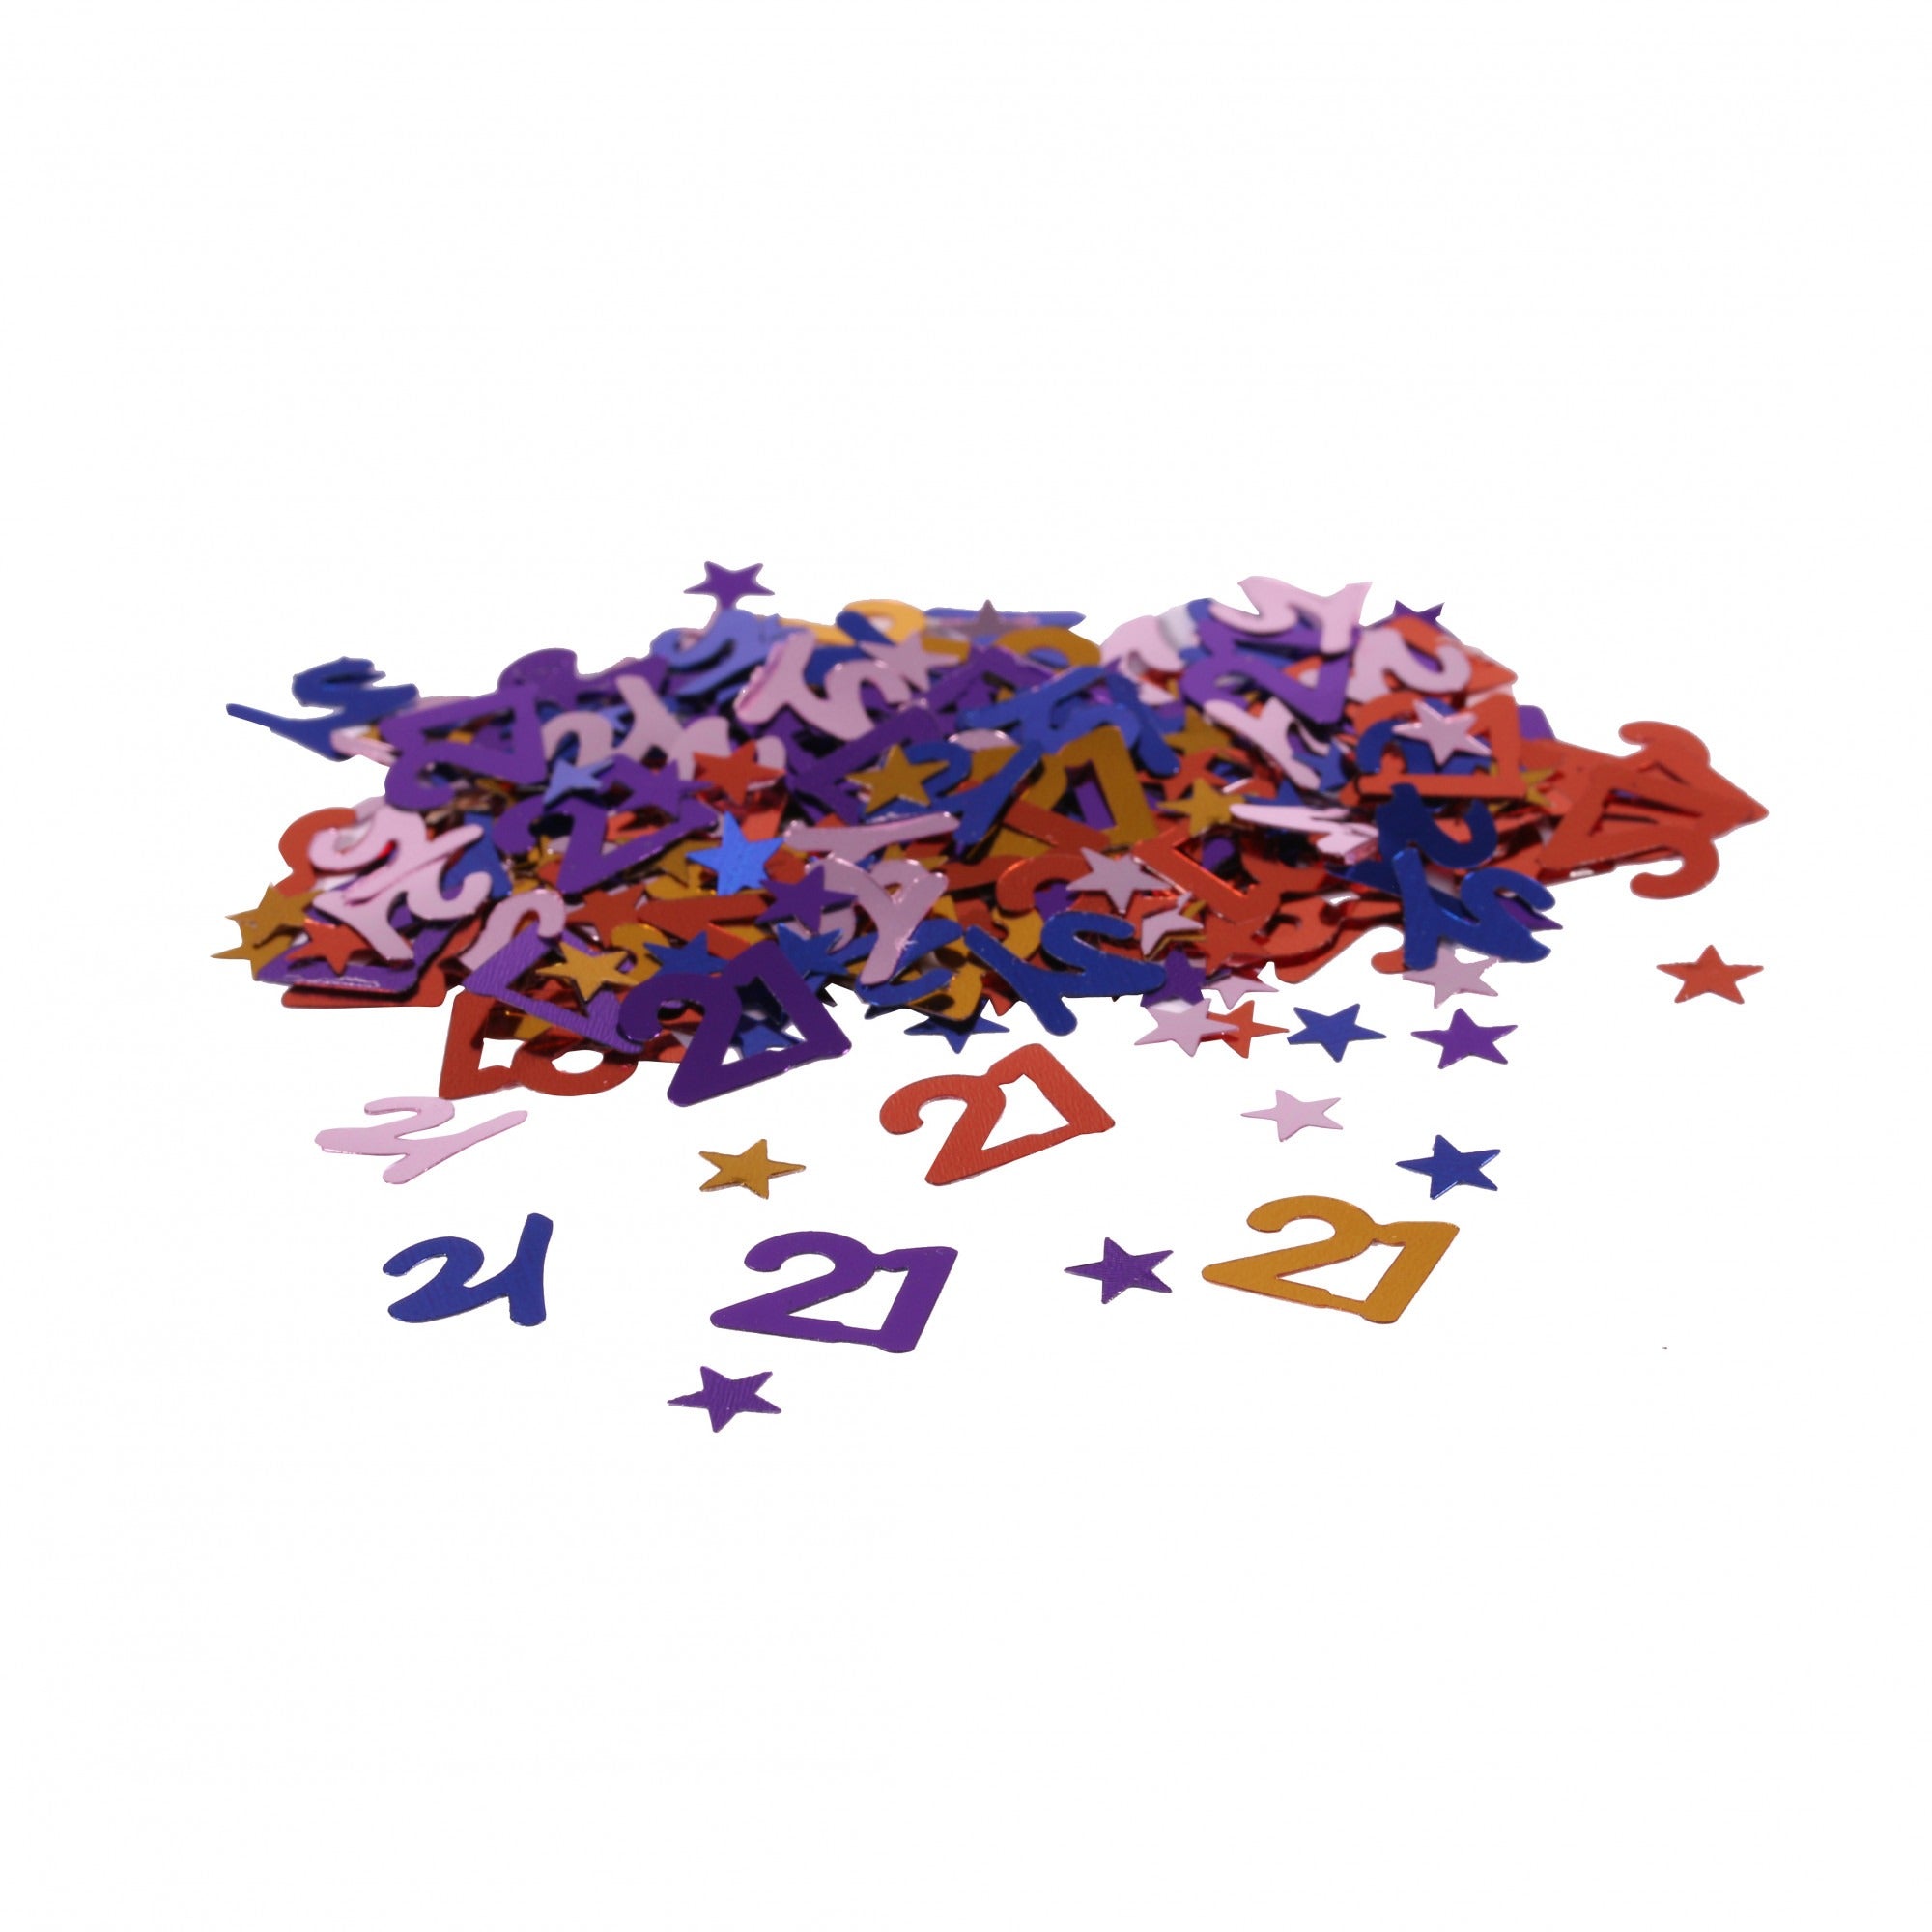 Mini Stars 21 Confetti - Multi Coloured